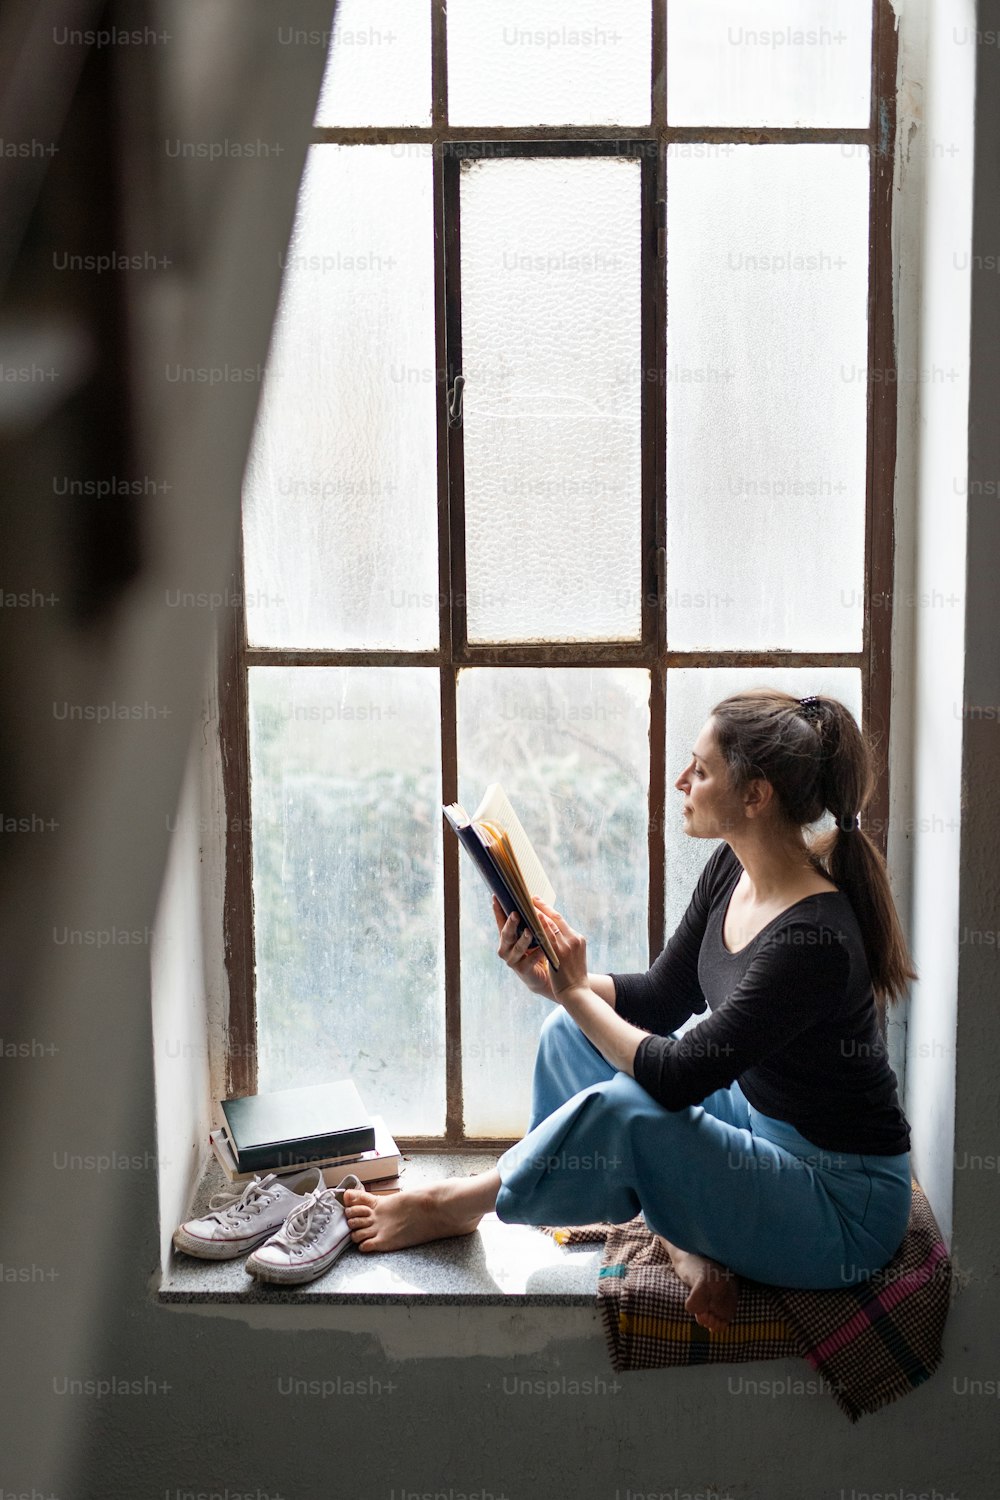 Retrato da mulher feliz sentada no peitoril da janela velha e suja, lendo um livro.